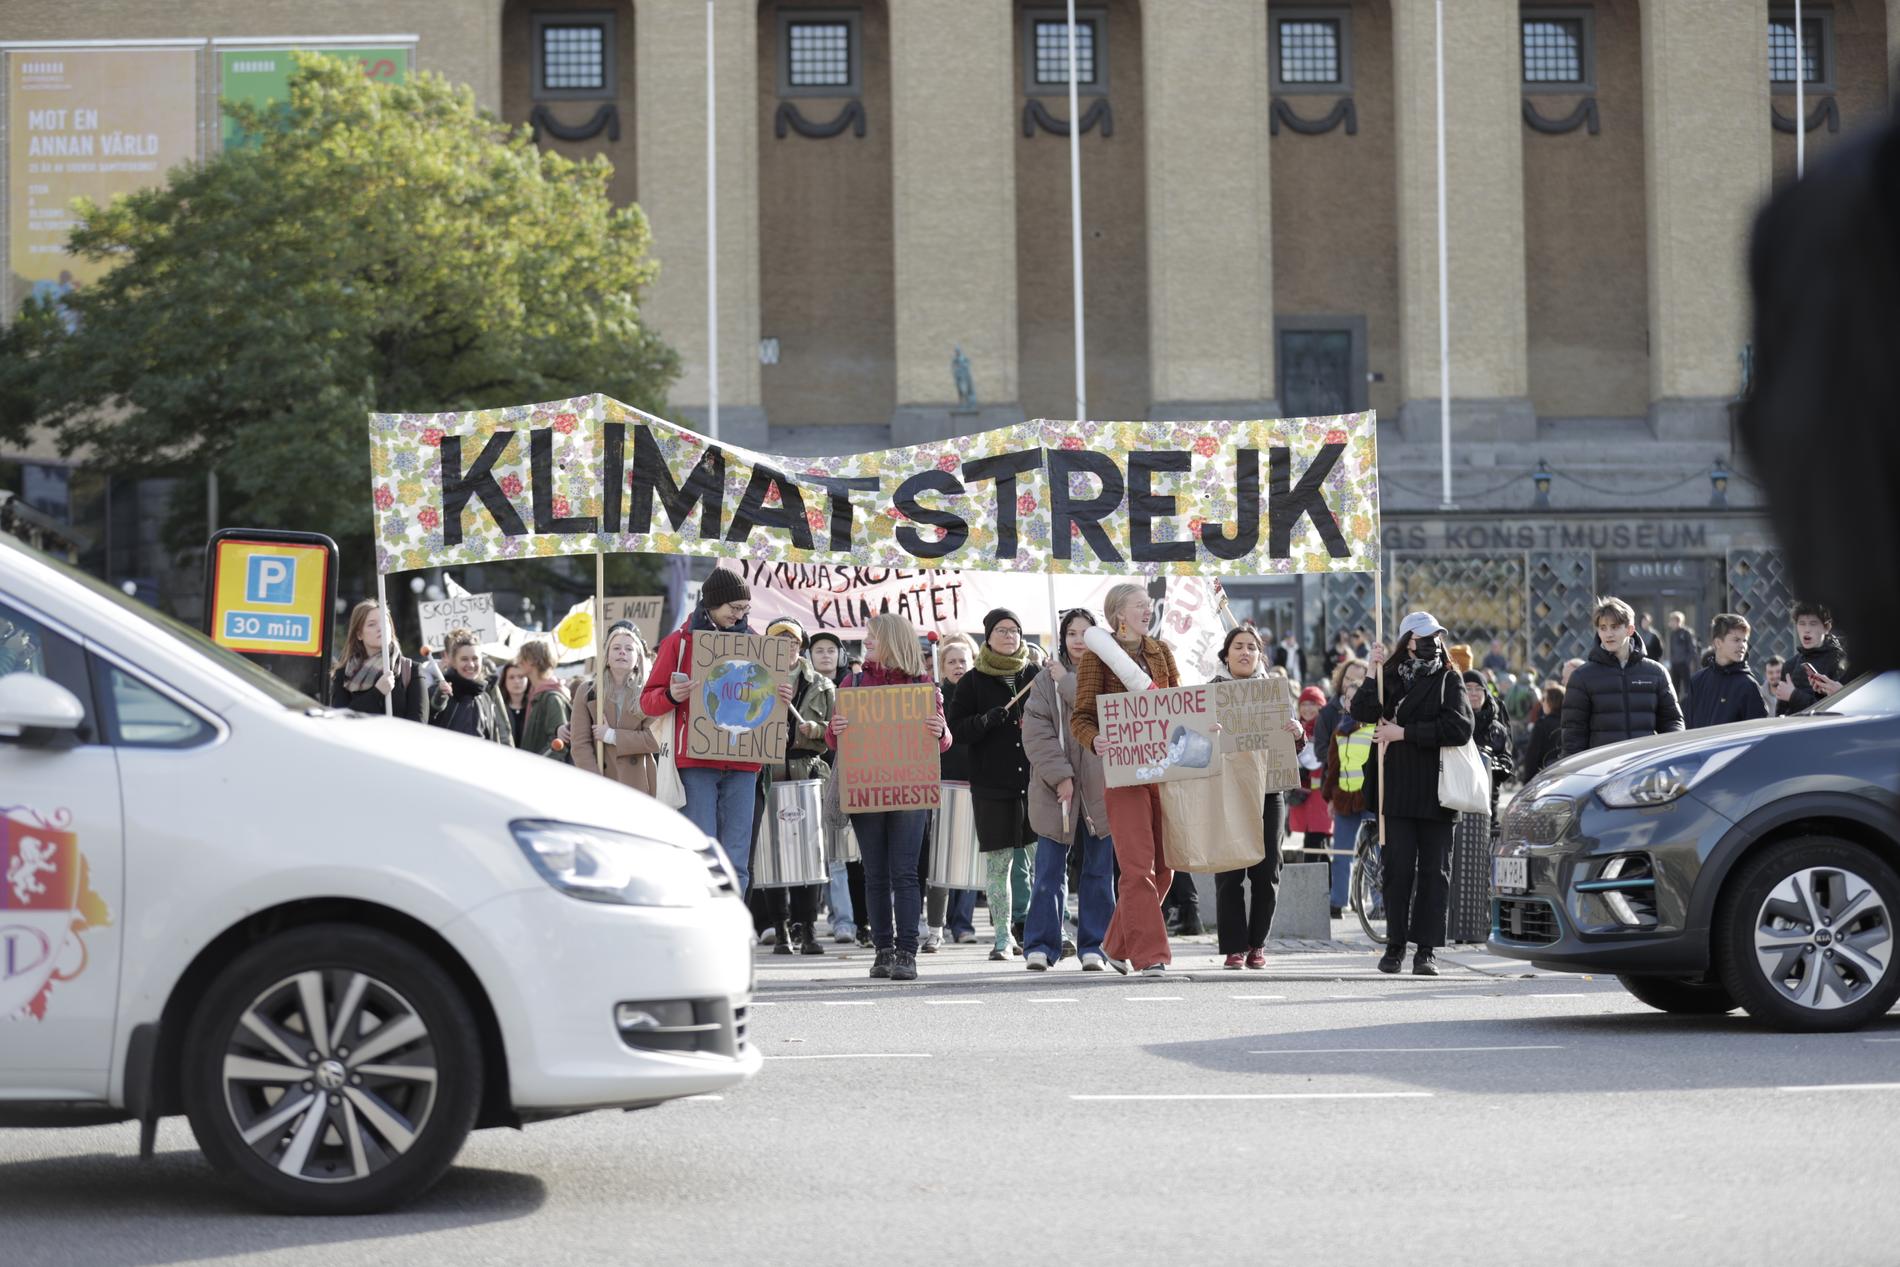 Klimatstrejk på Götaplatsen i Göteborg.